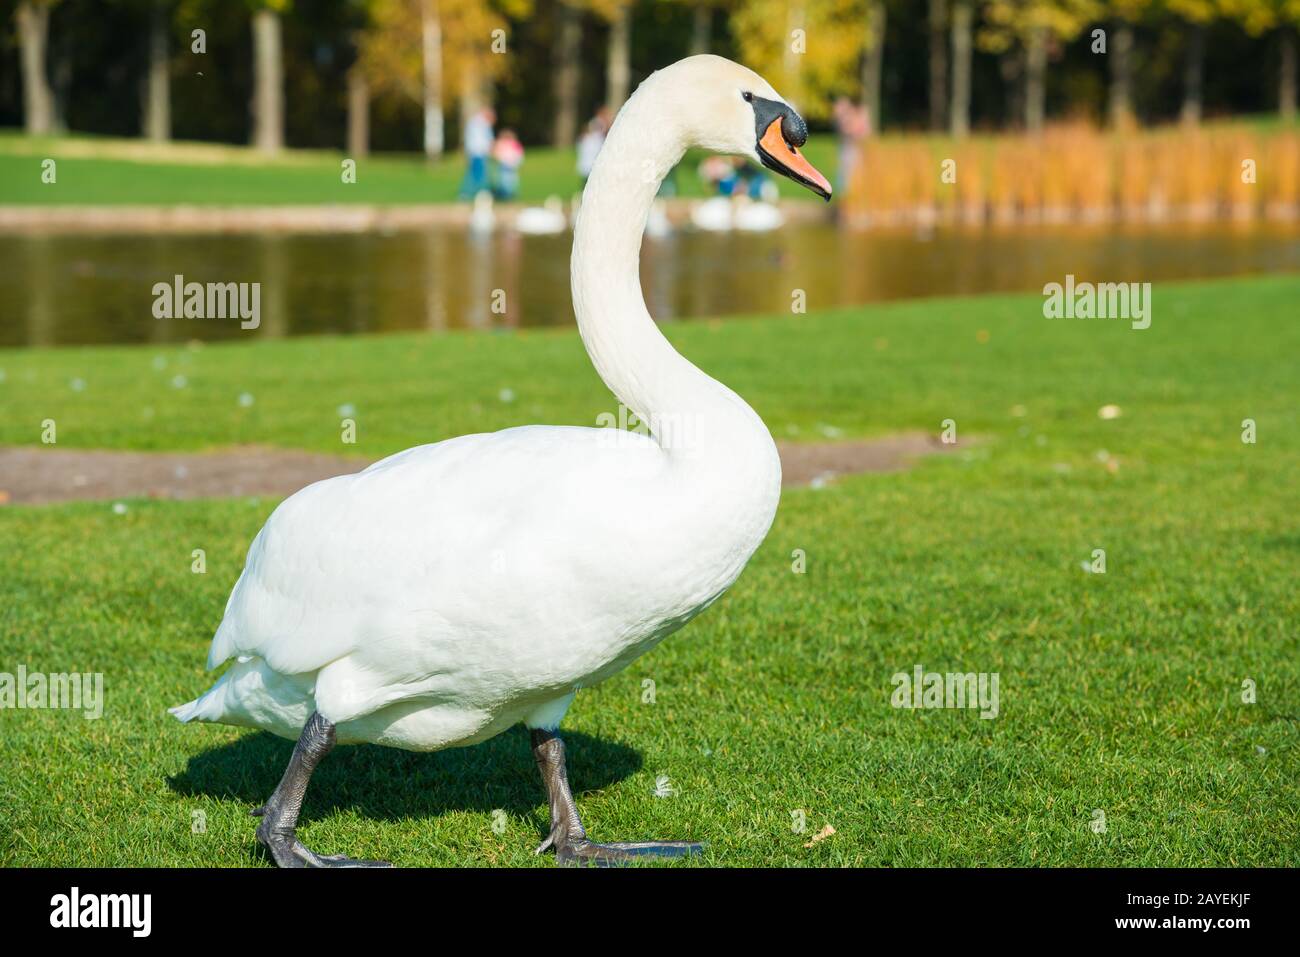 White swan on grass near lake Stock Photo